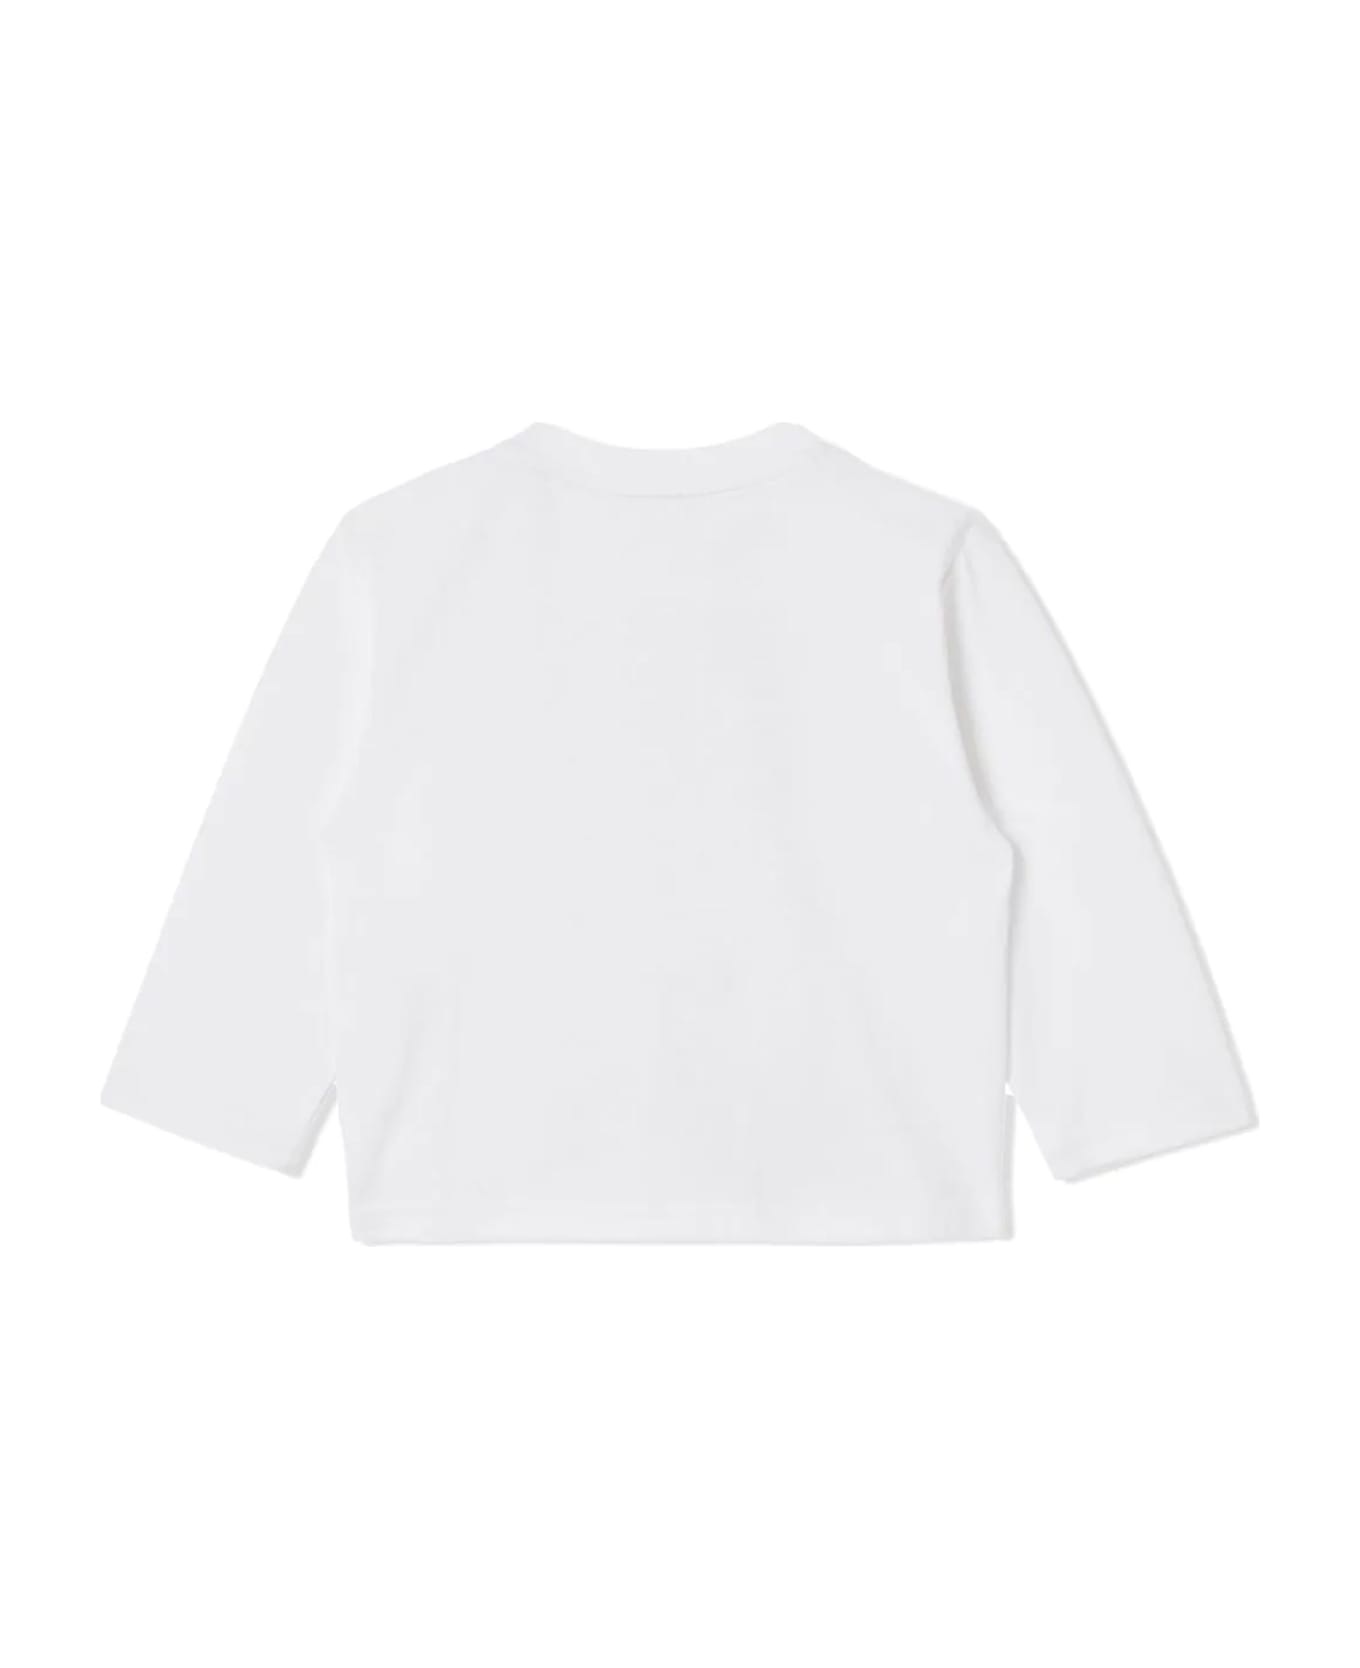 Burberry White Cotton Tshirt - Bianco